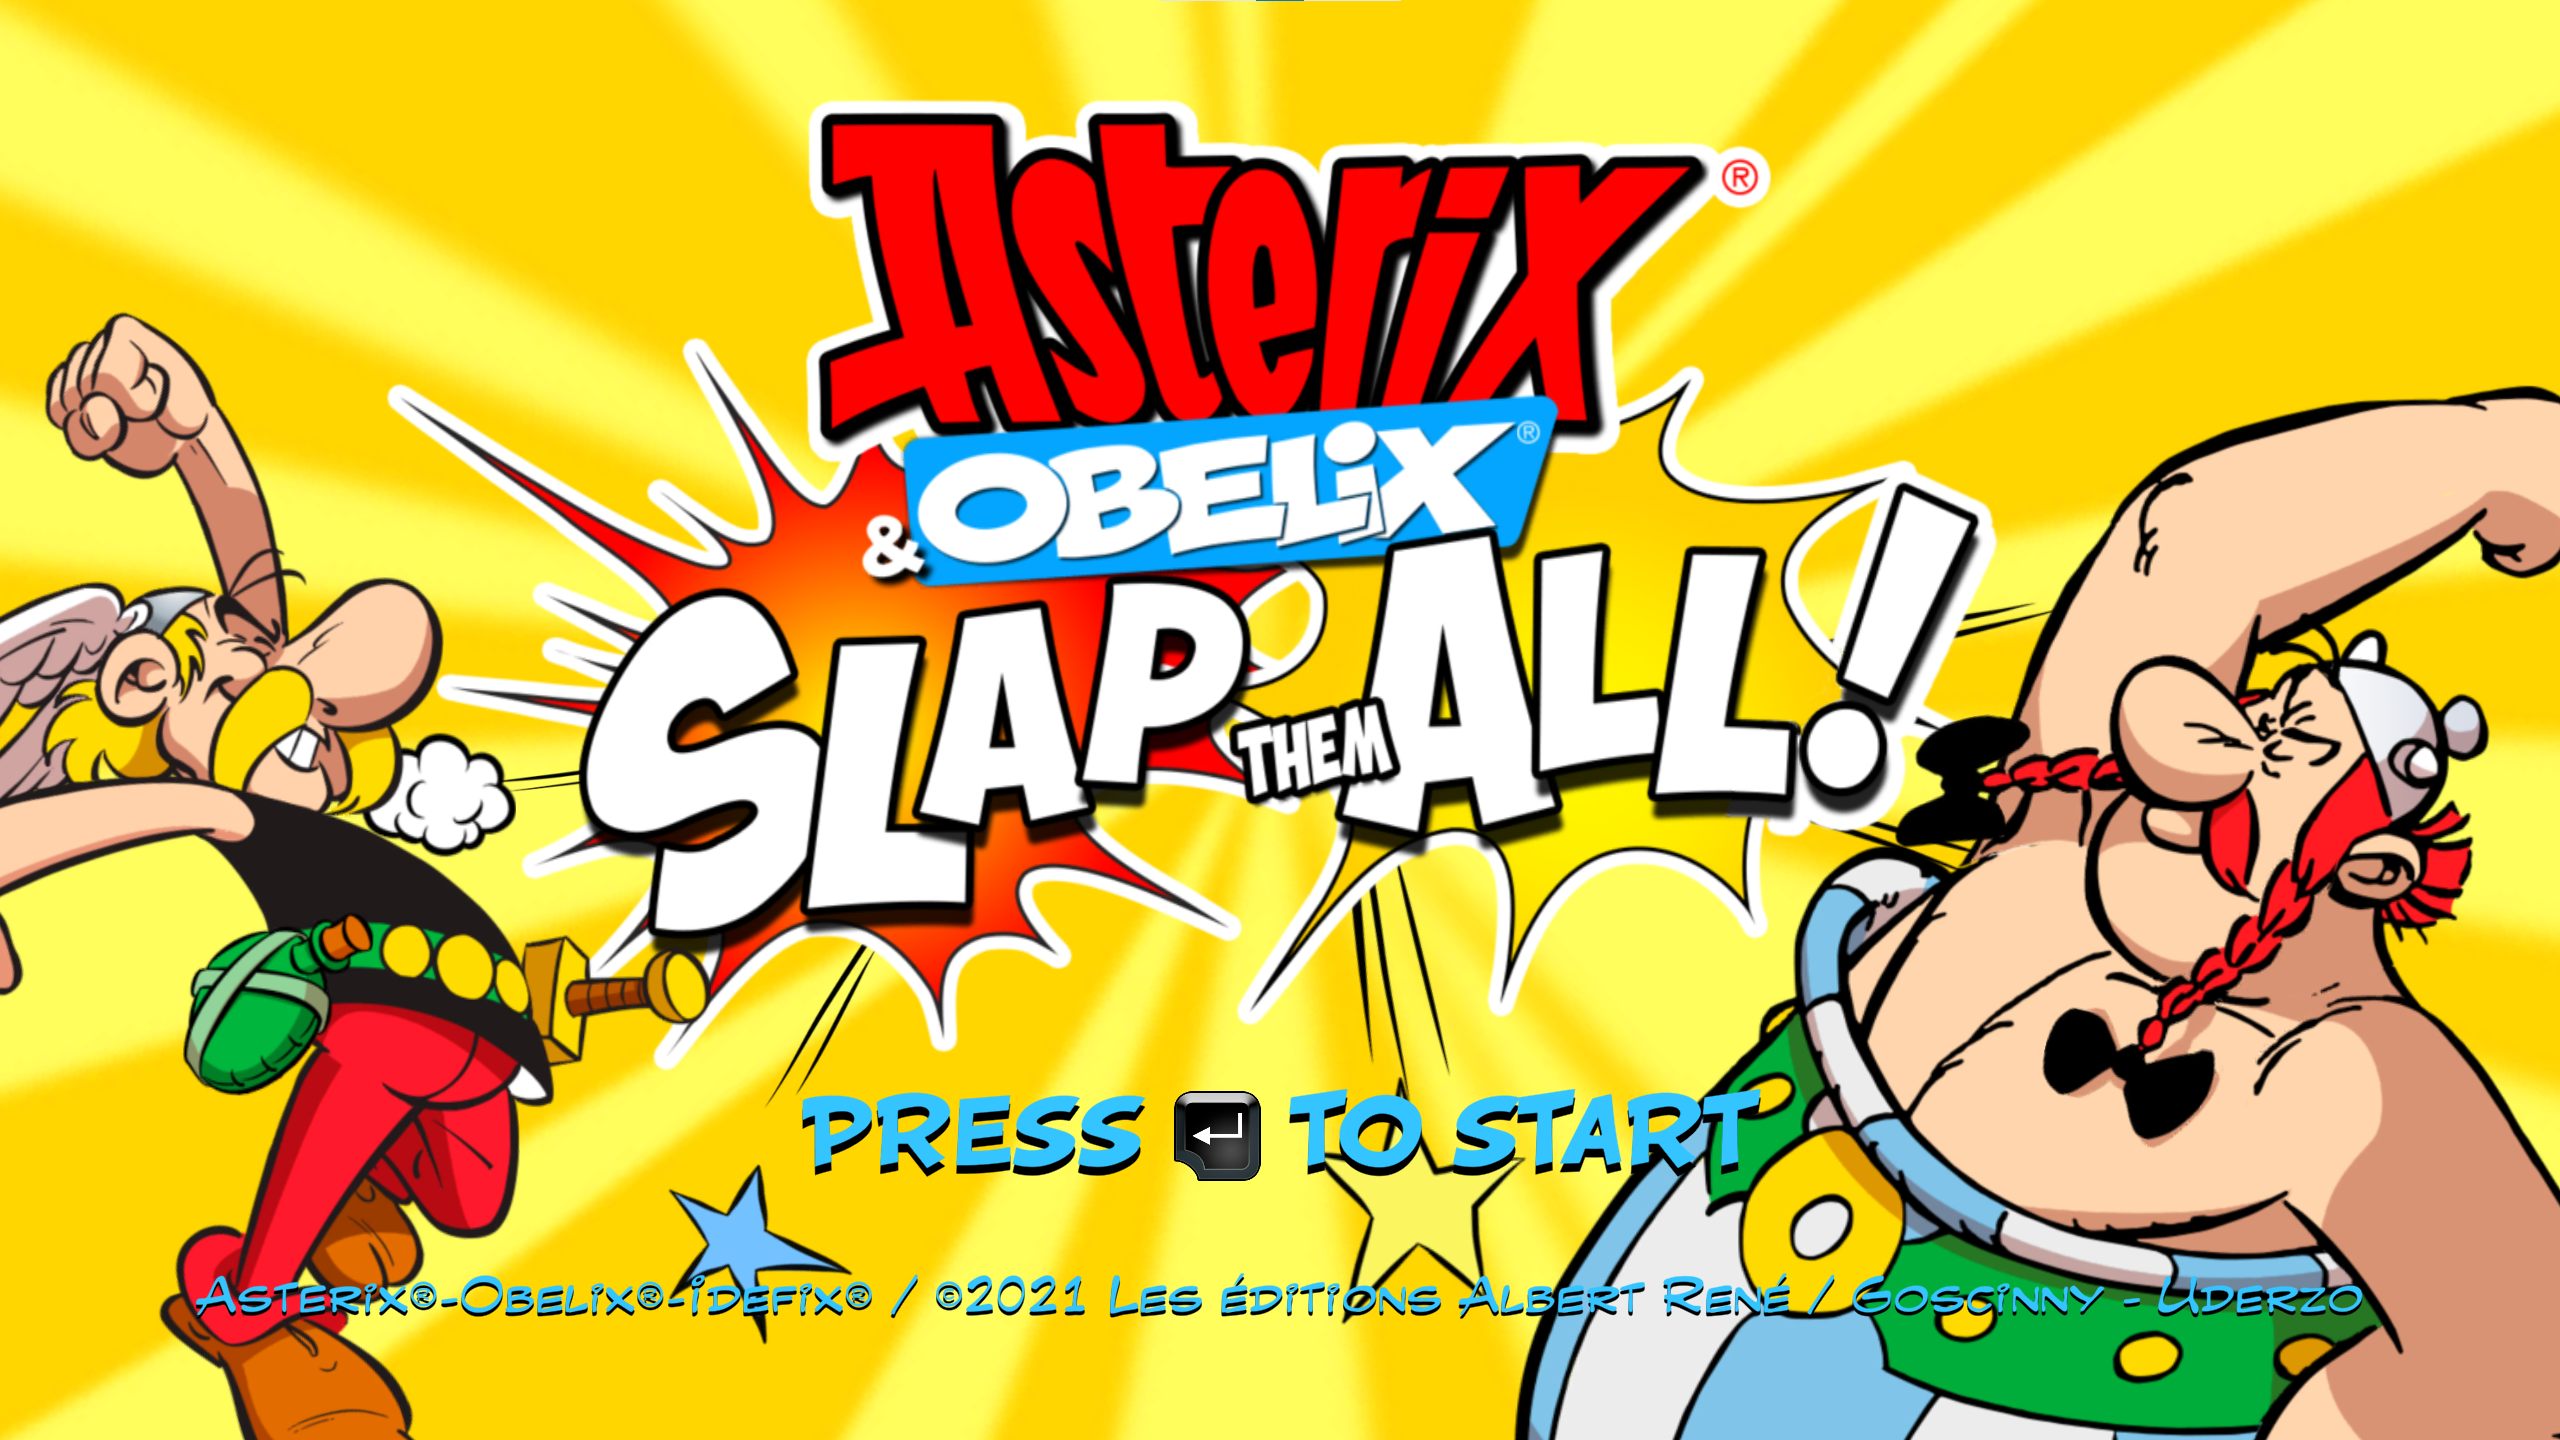 Asterix & Obelix – Slap Them All!